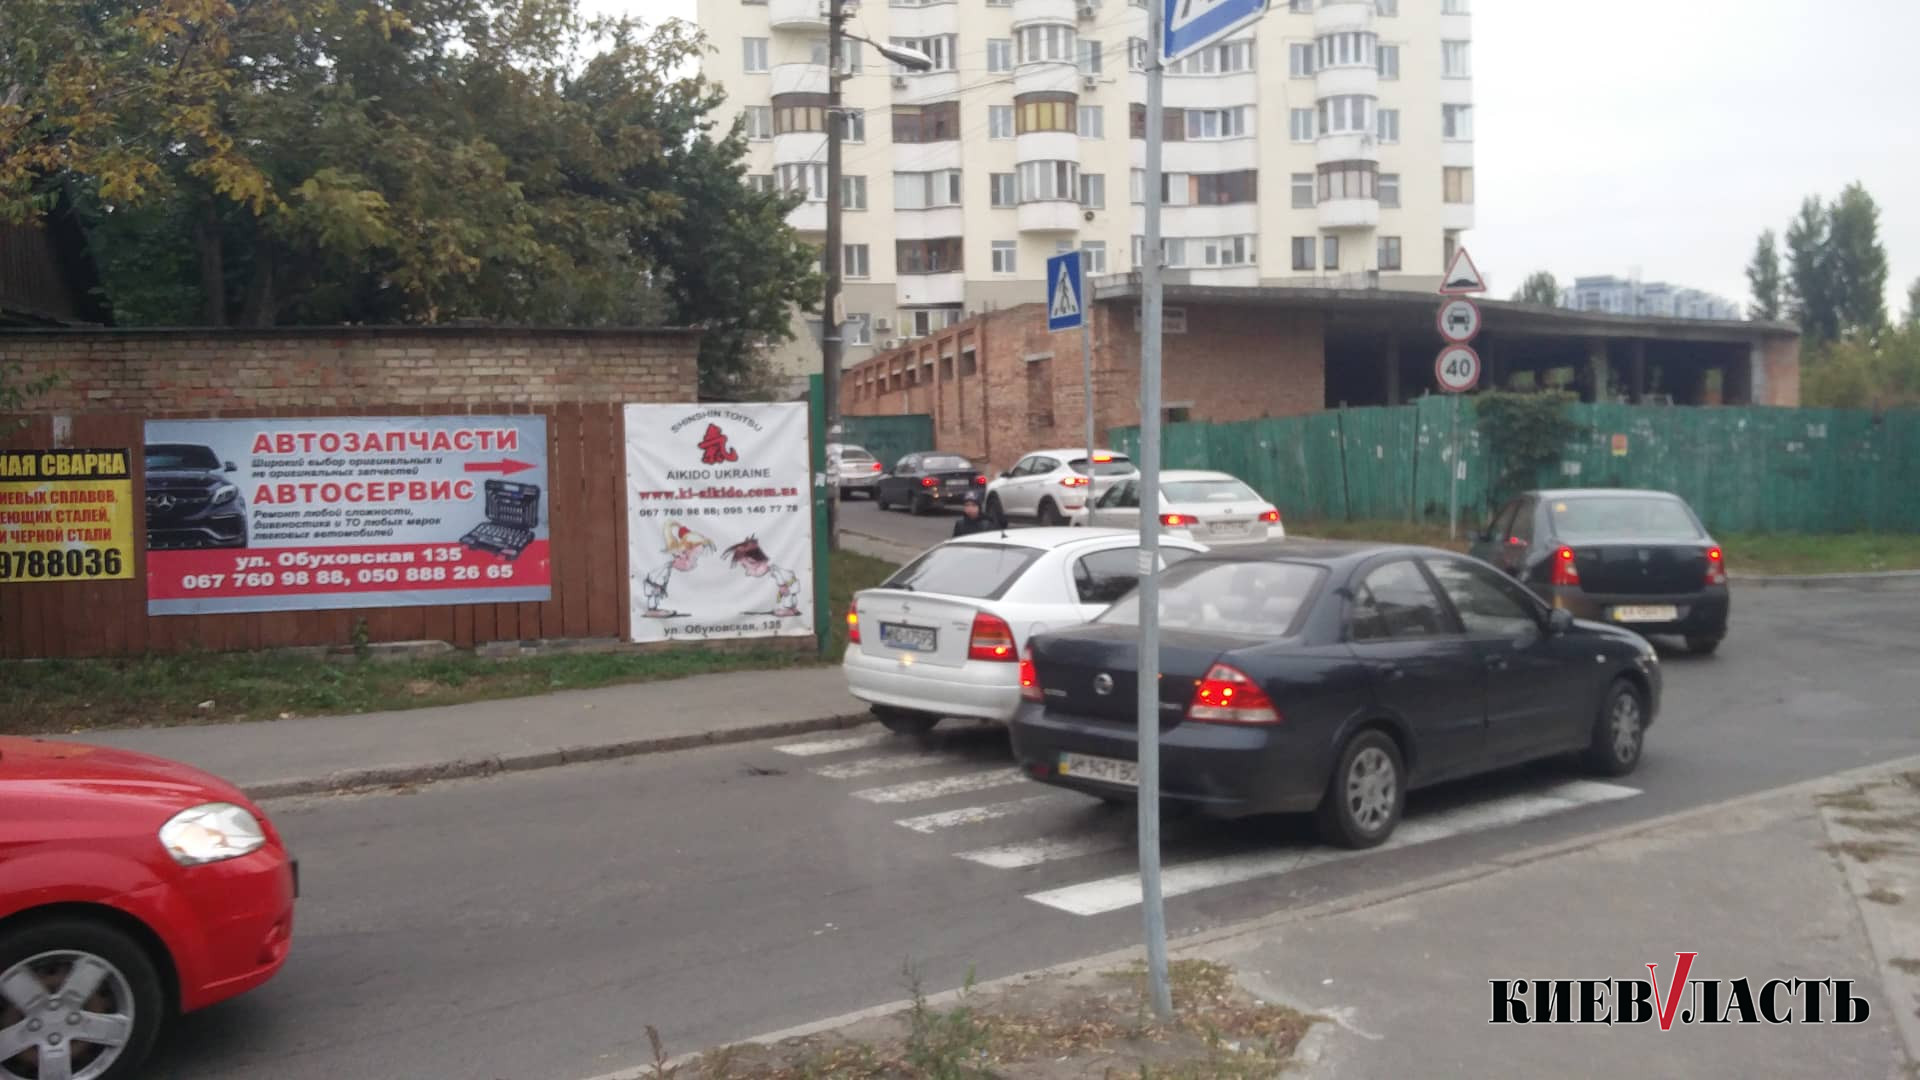 Киевляне опасаются дорожных трагедий на улице Обуховской (фото, видео)